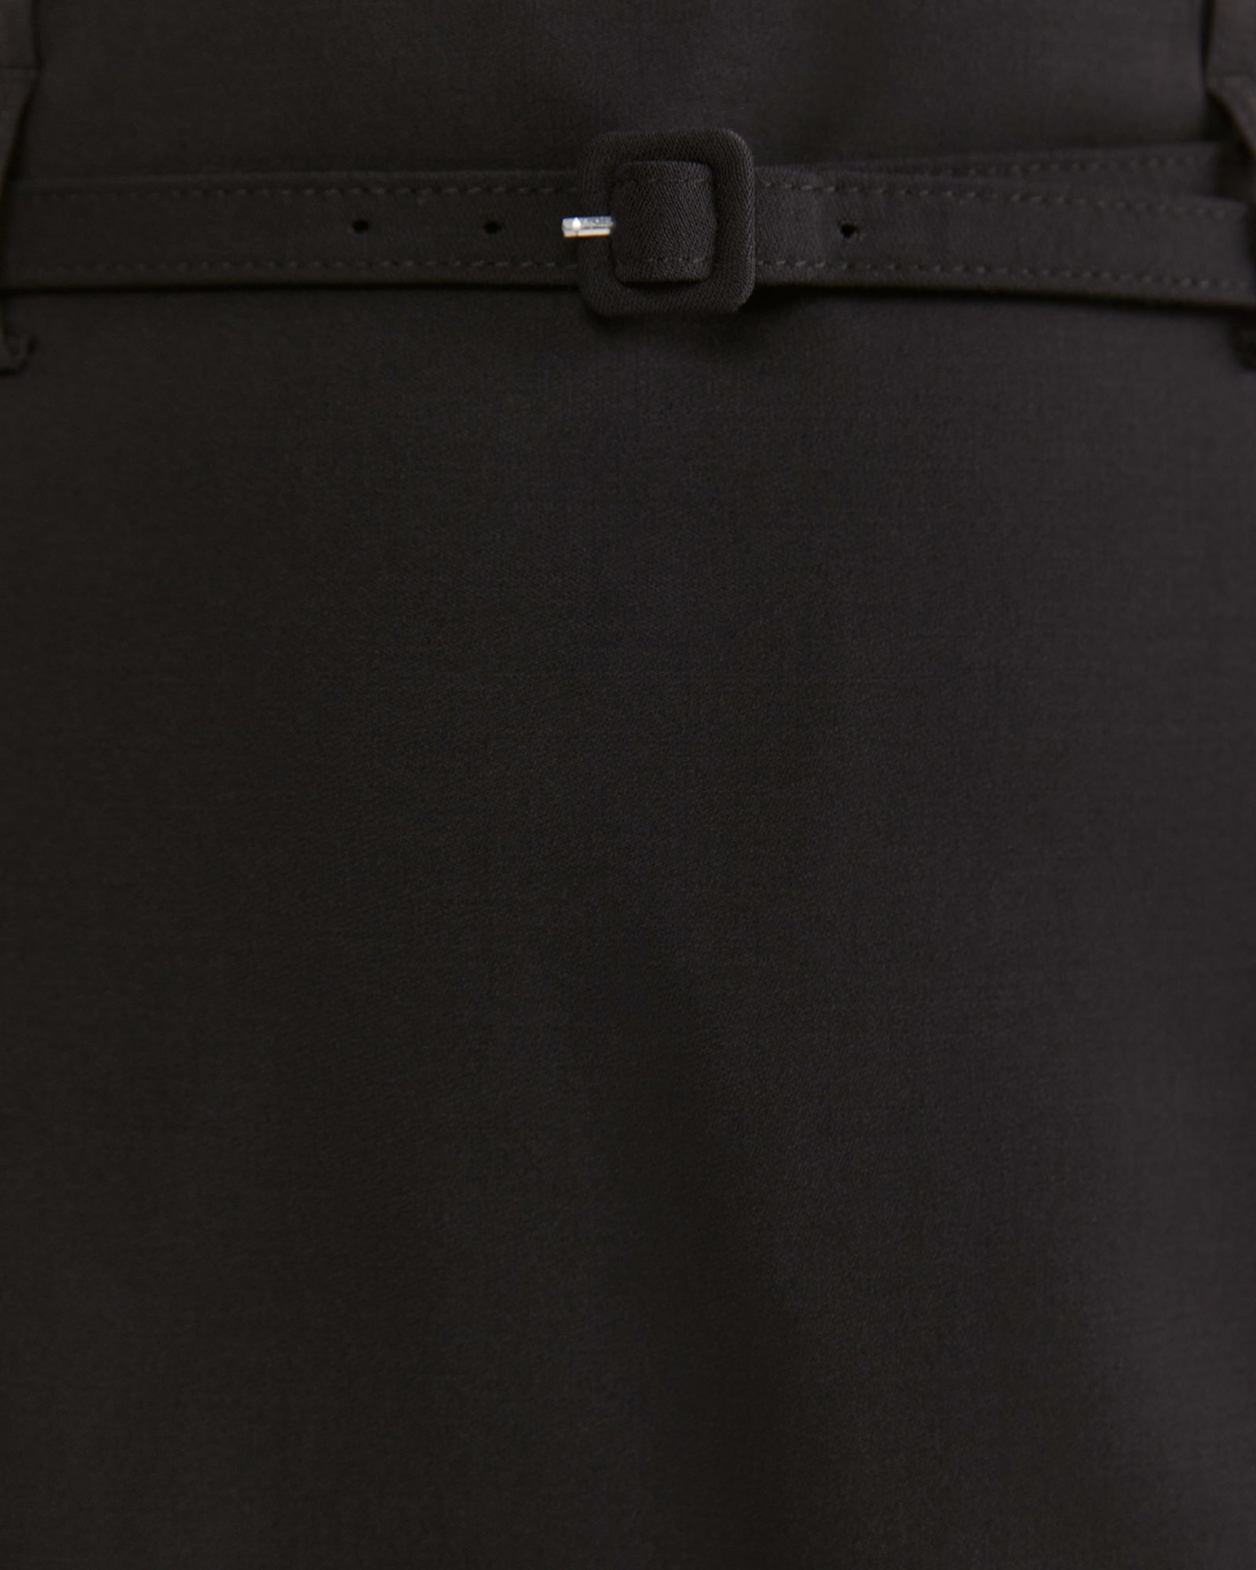 Celeste Wool Midi Skirt in BLACK